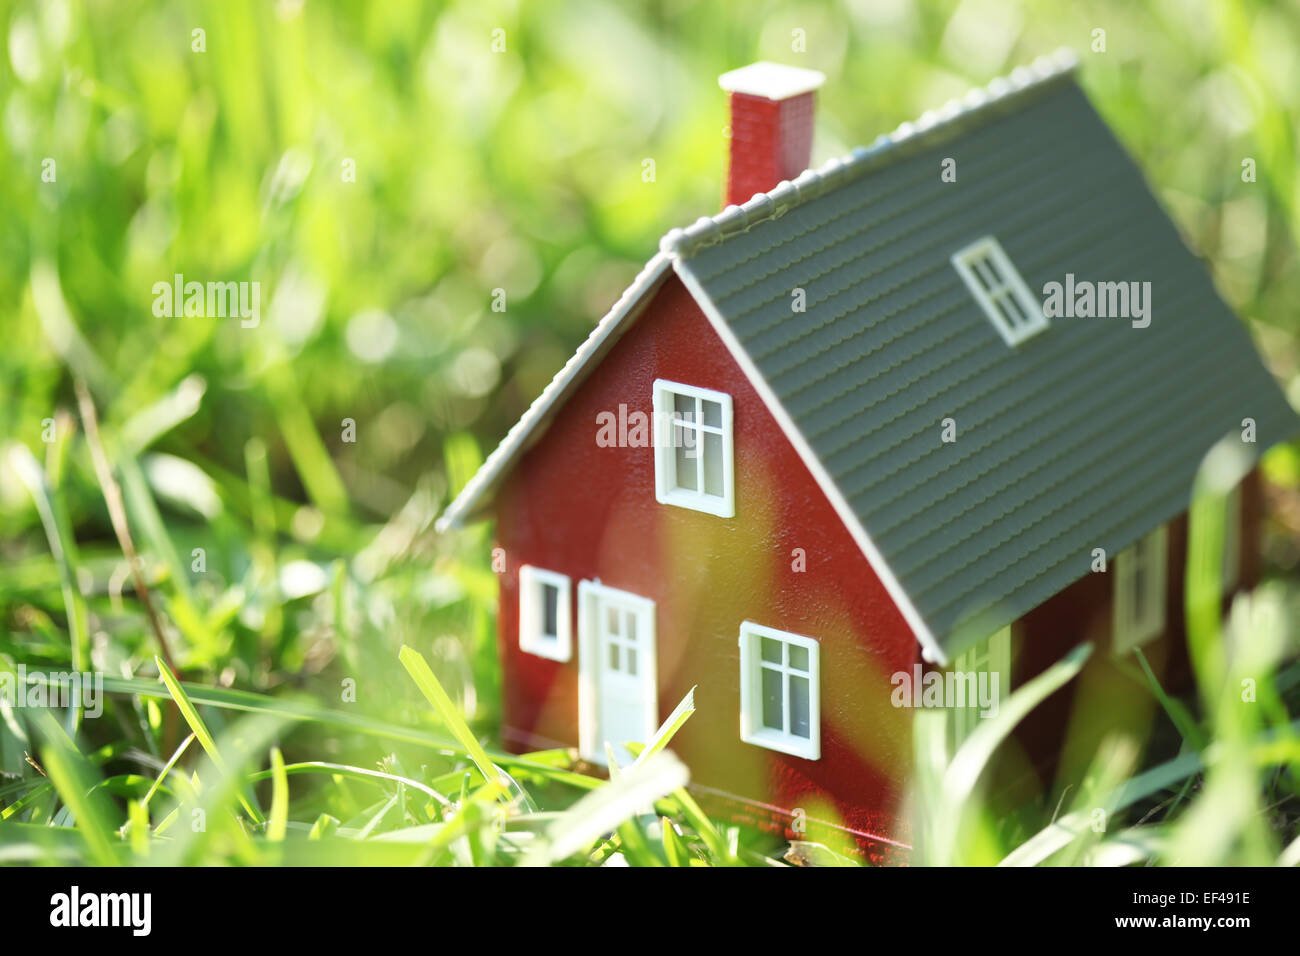 Kleines rotes Haus im grünen Rasen Stockfoto